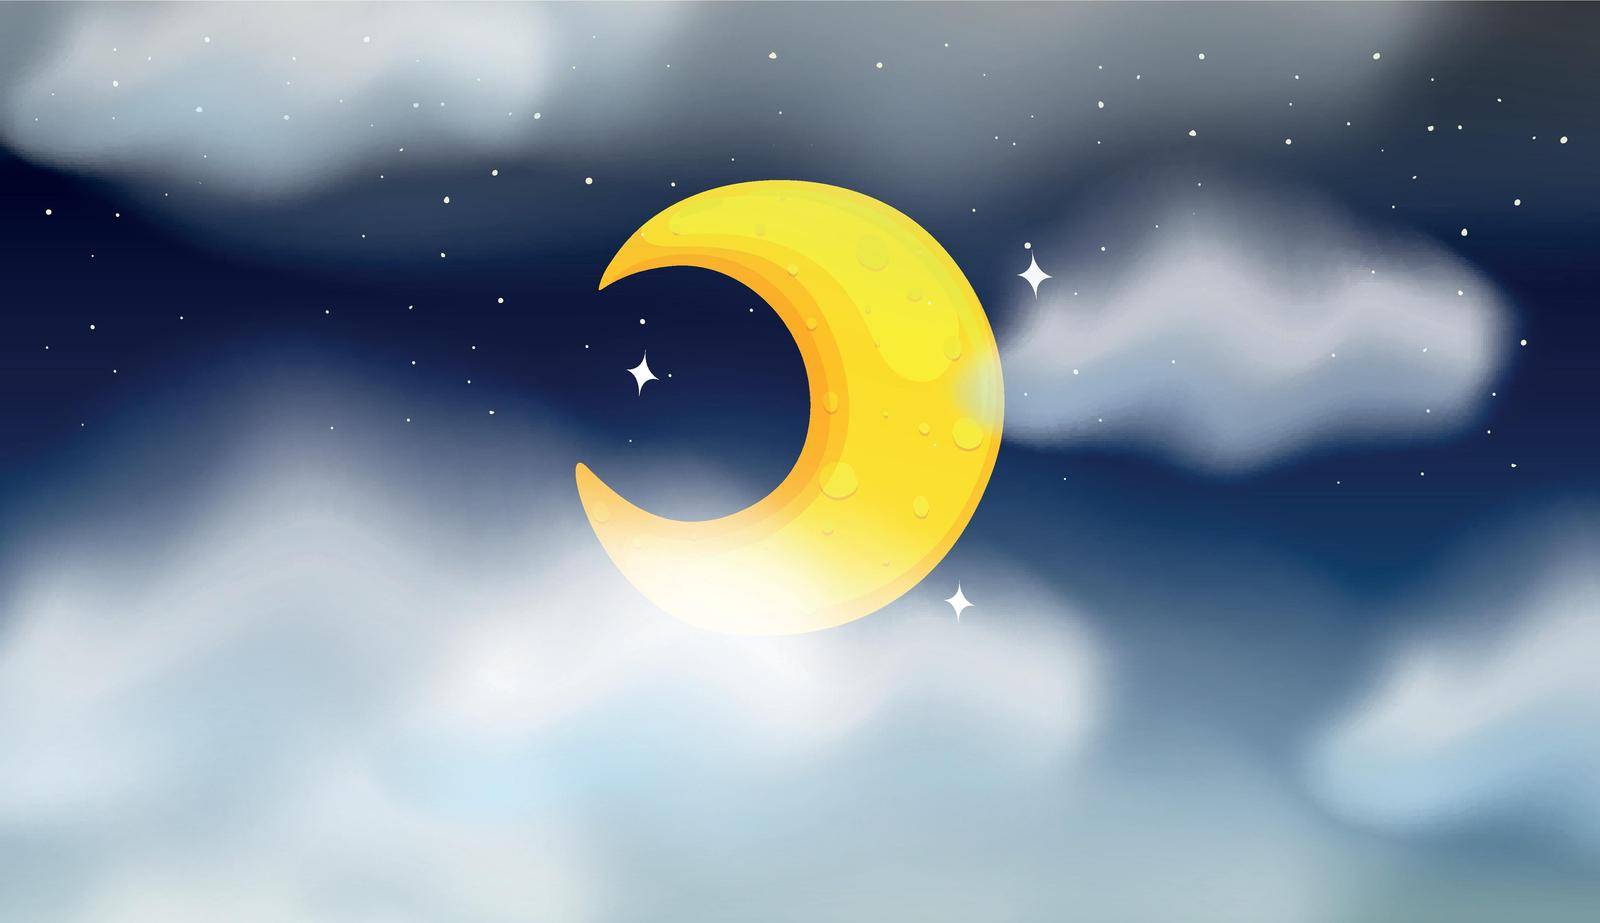 Cresent moon night scene illustration